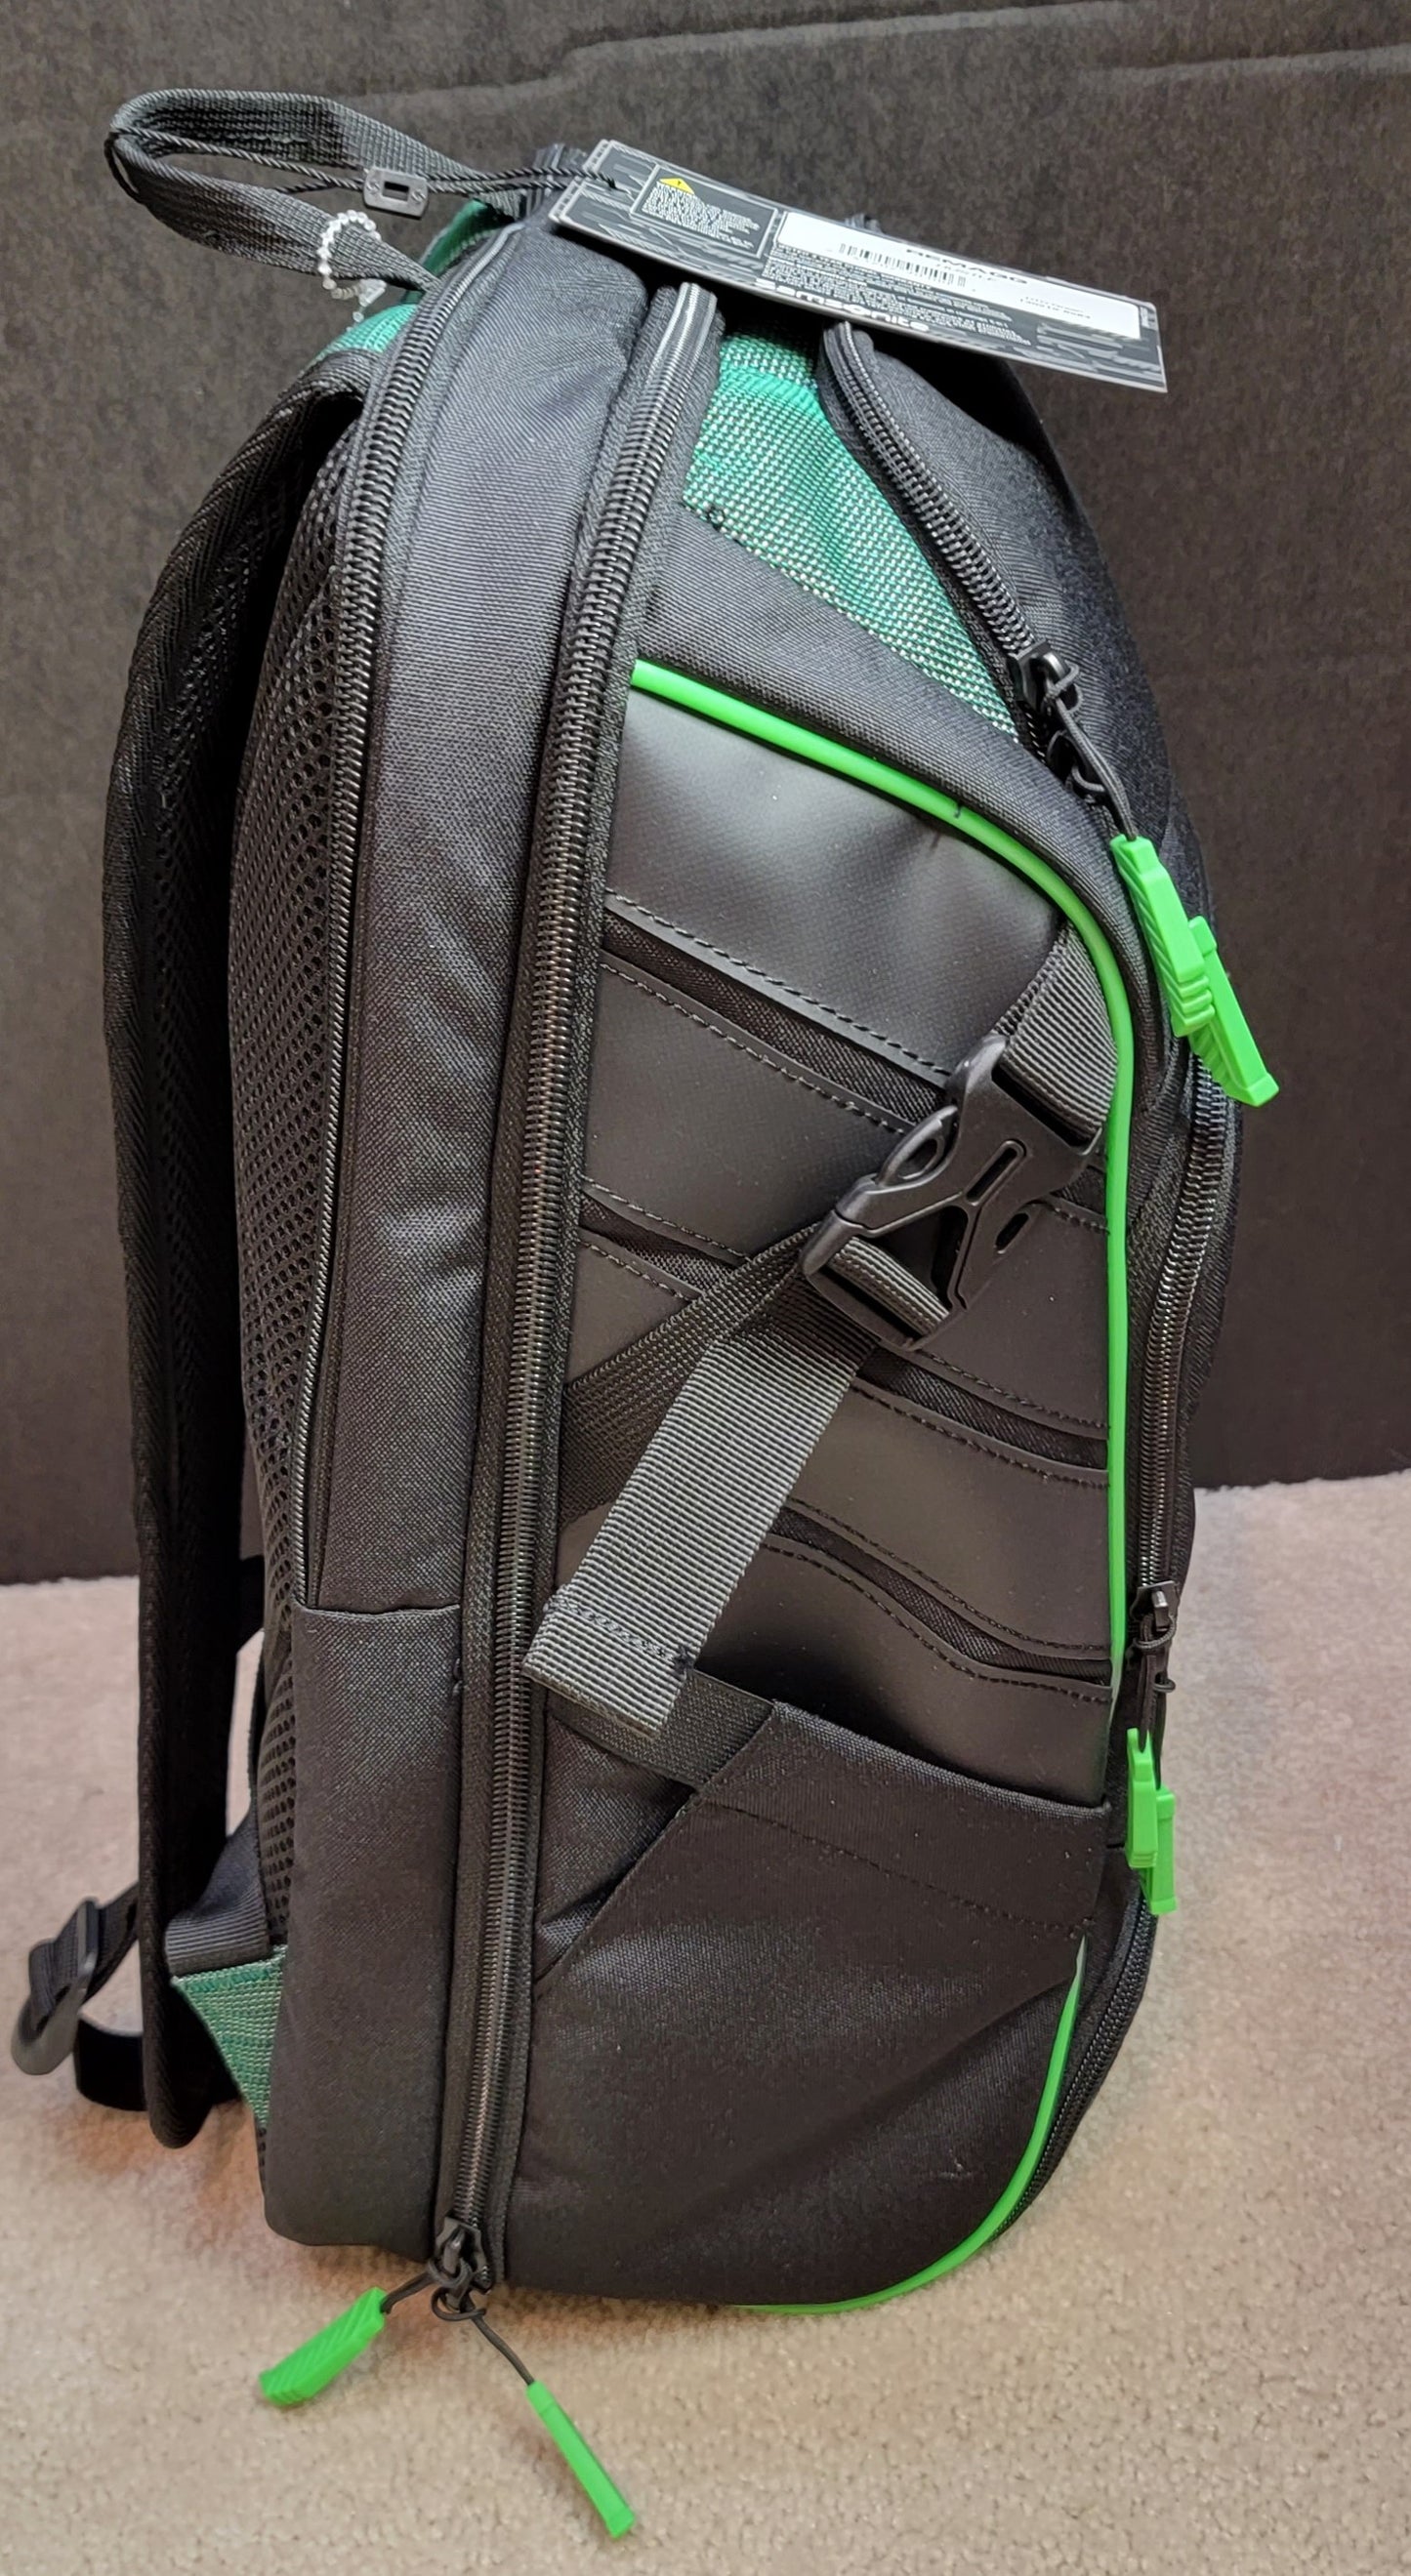 Samsonite RENMAGG HUSTLE Backpack Green - SOLD OUT ONLINE!